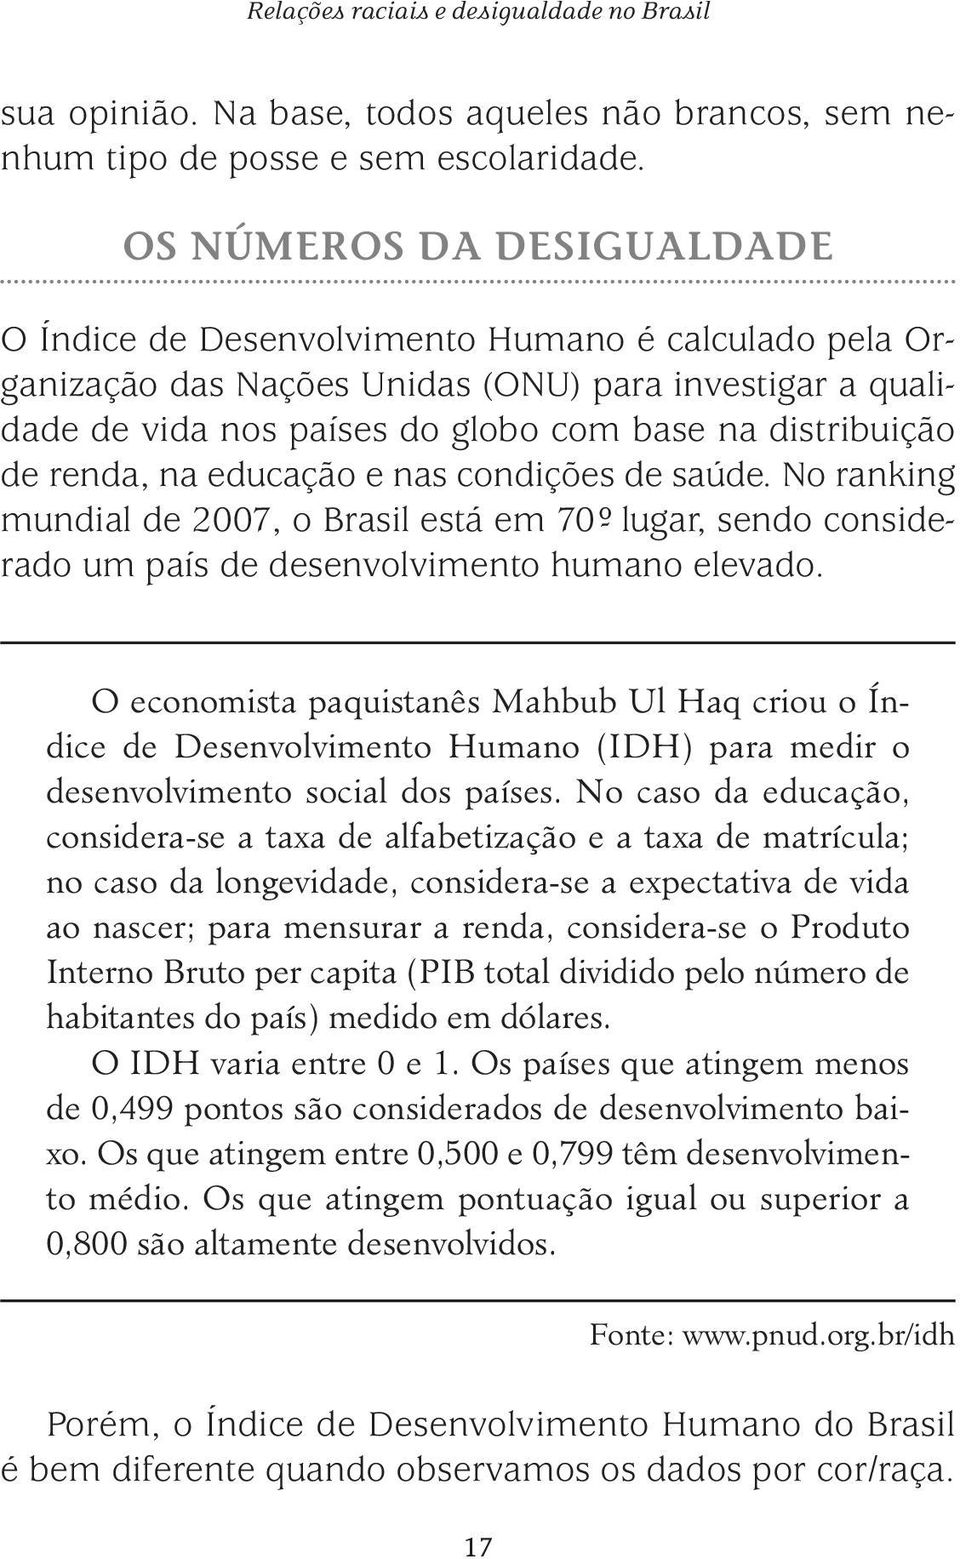 renda, na educação e nas condições de saúde. No ranking mundial de 2007, o Brasil está em 70º- lugar, sendo considerado um país de desenvolvimento humano elevado.